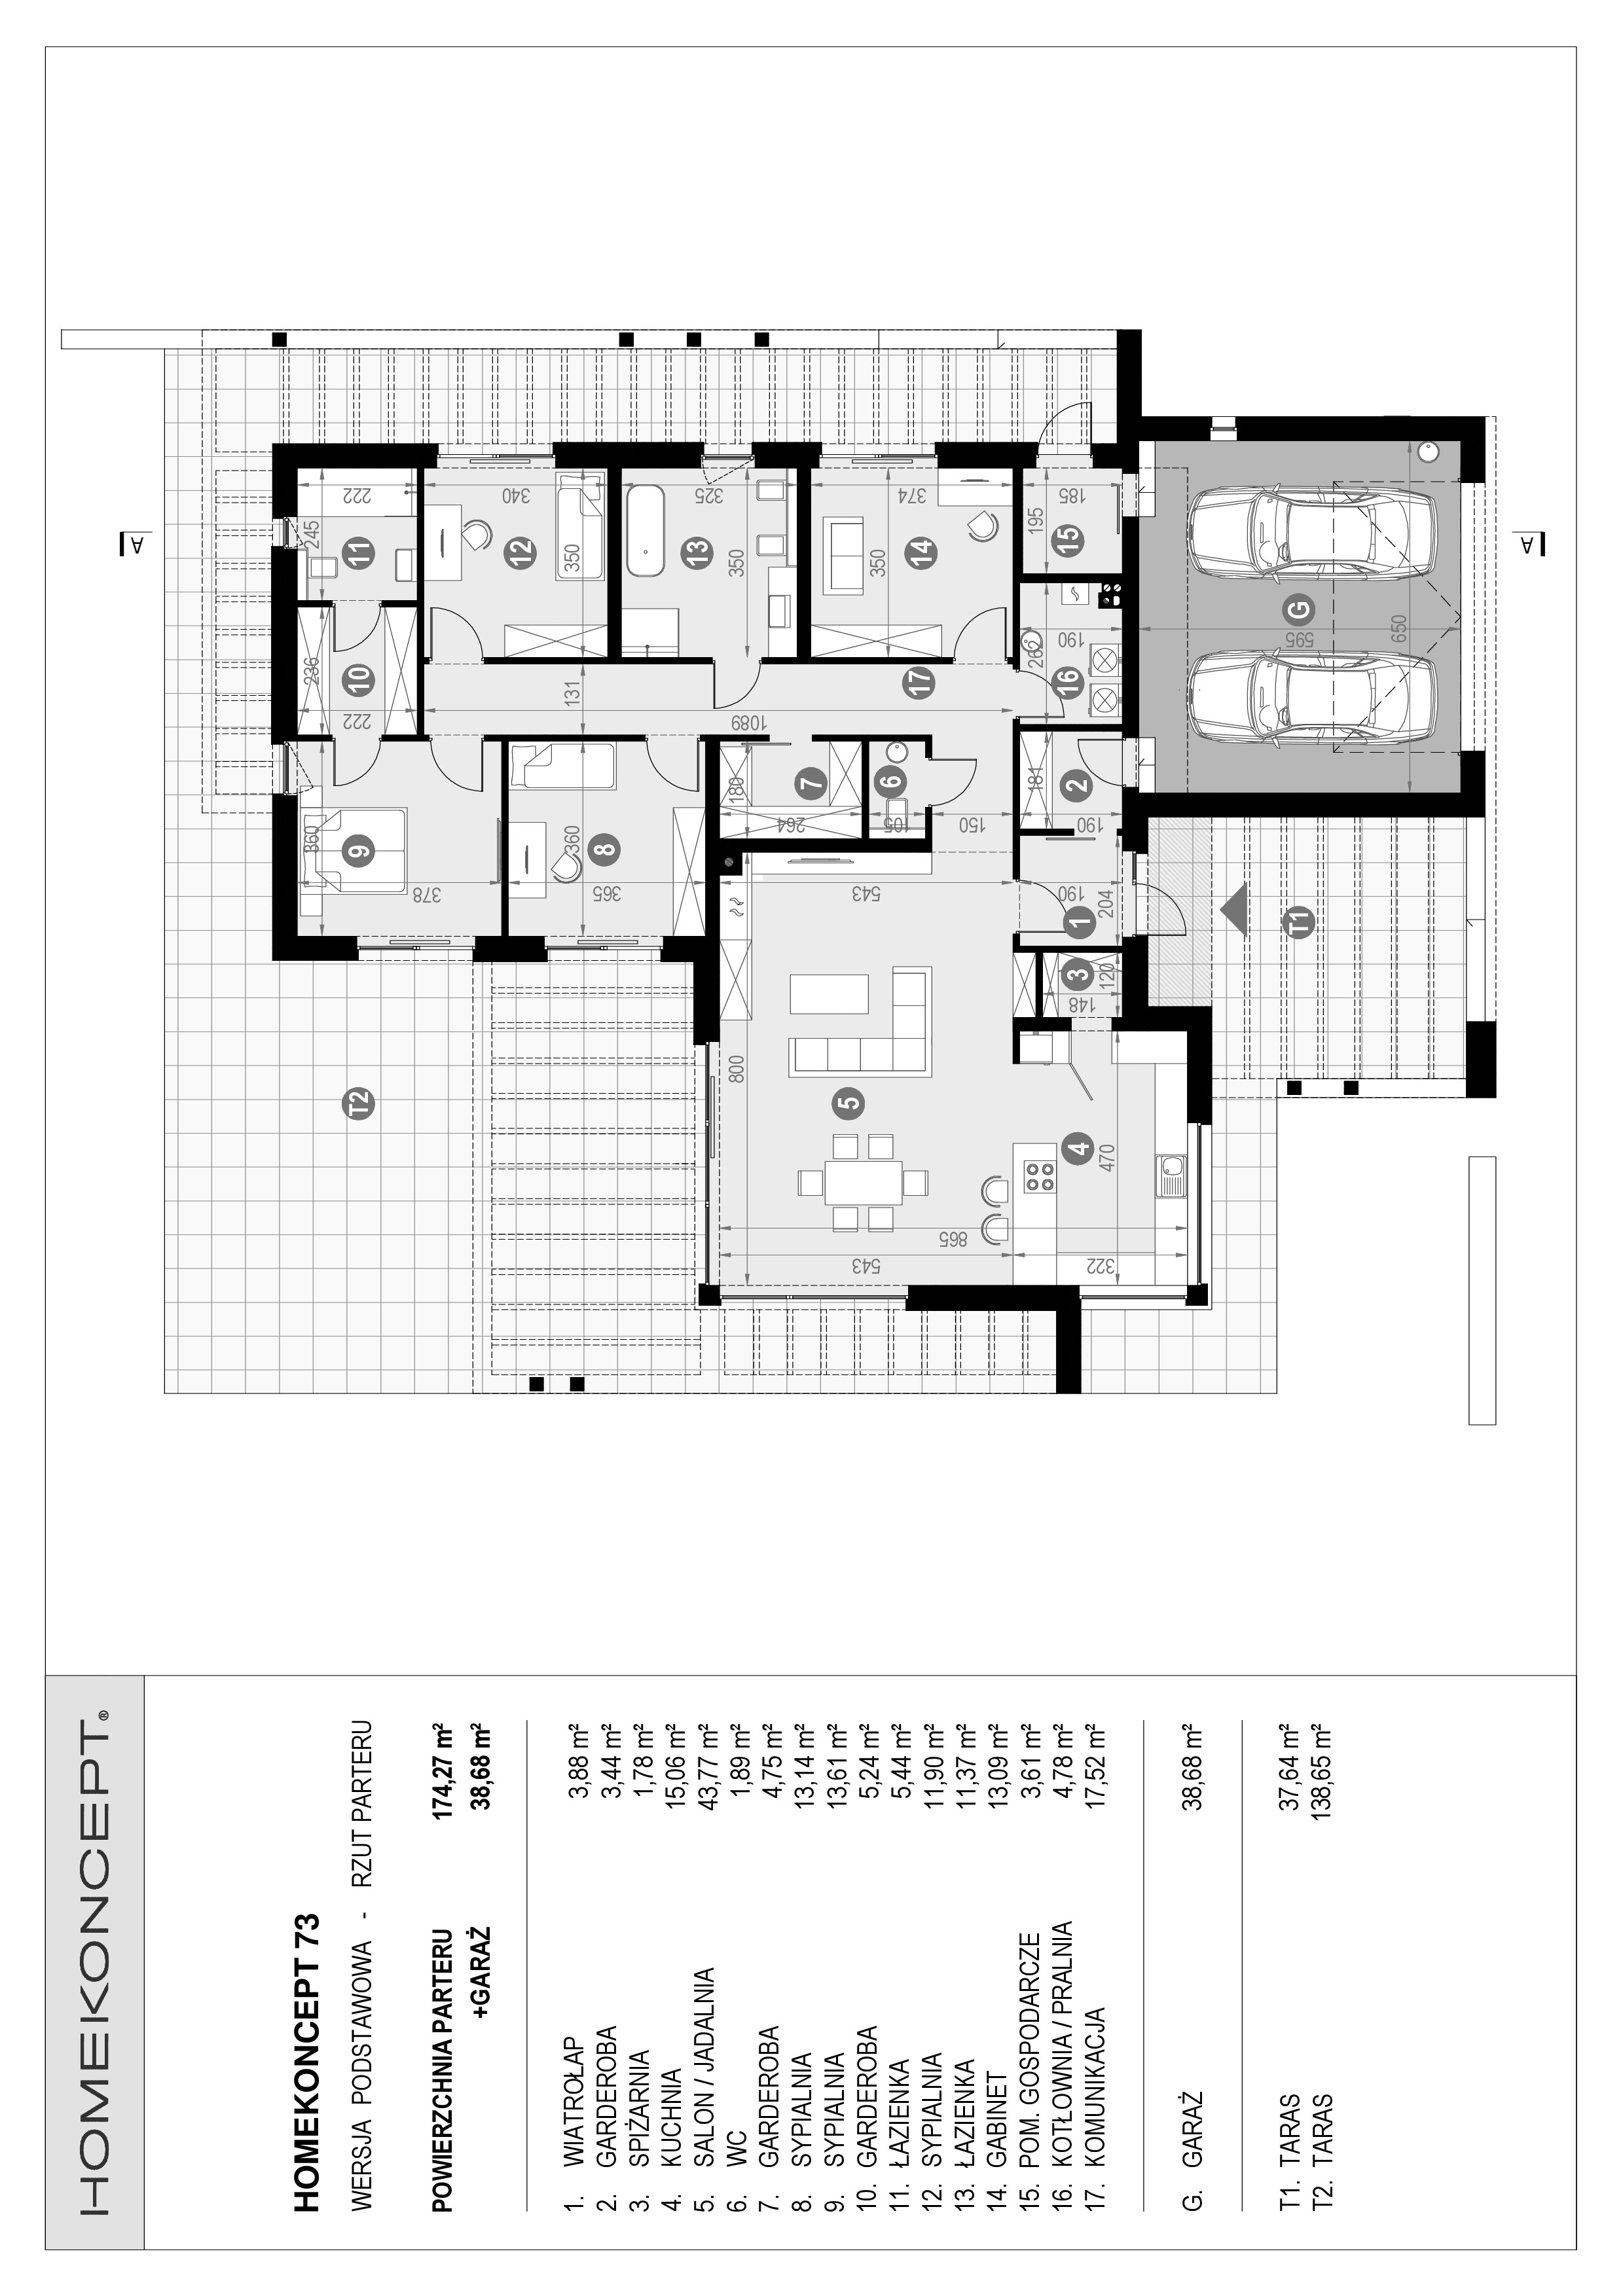 Gotowy projekt domu parterowego z funkcjonalnym wnętrze HOMEKONCEPT 73 – zasady rozmieszczenia pomieszczeń